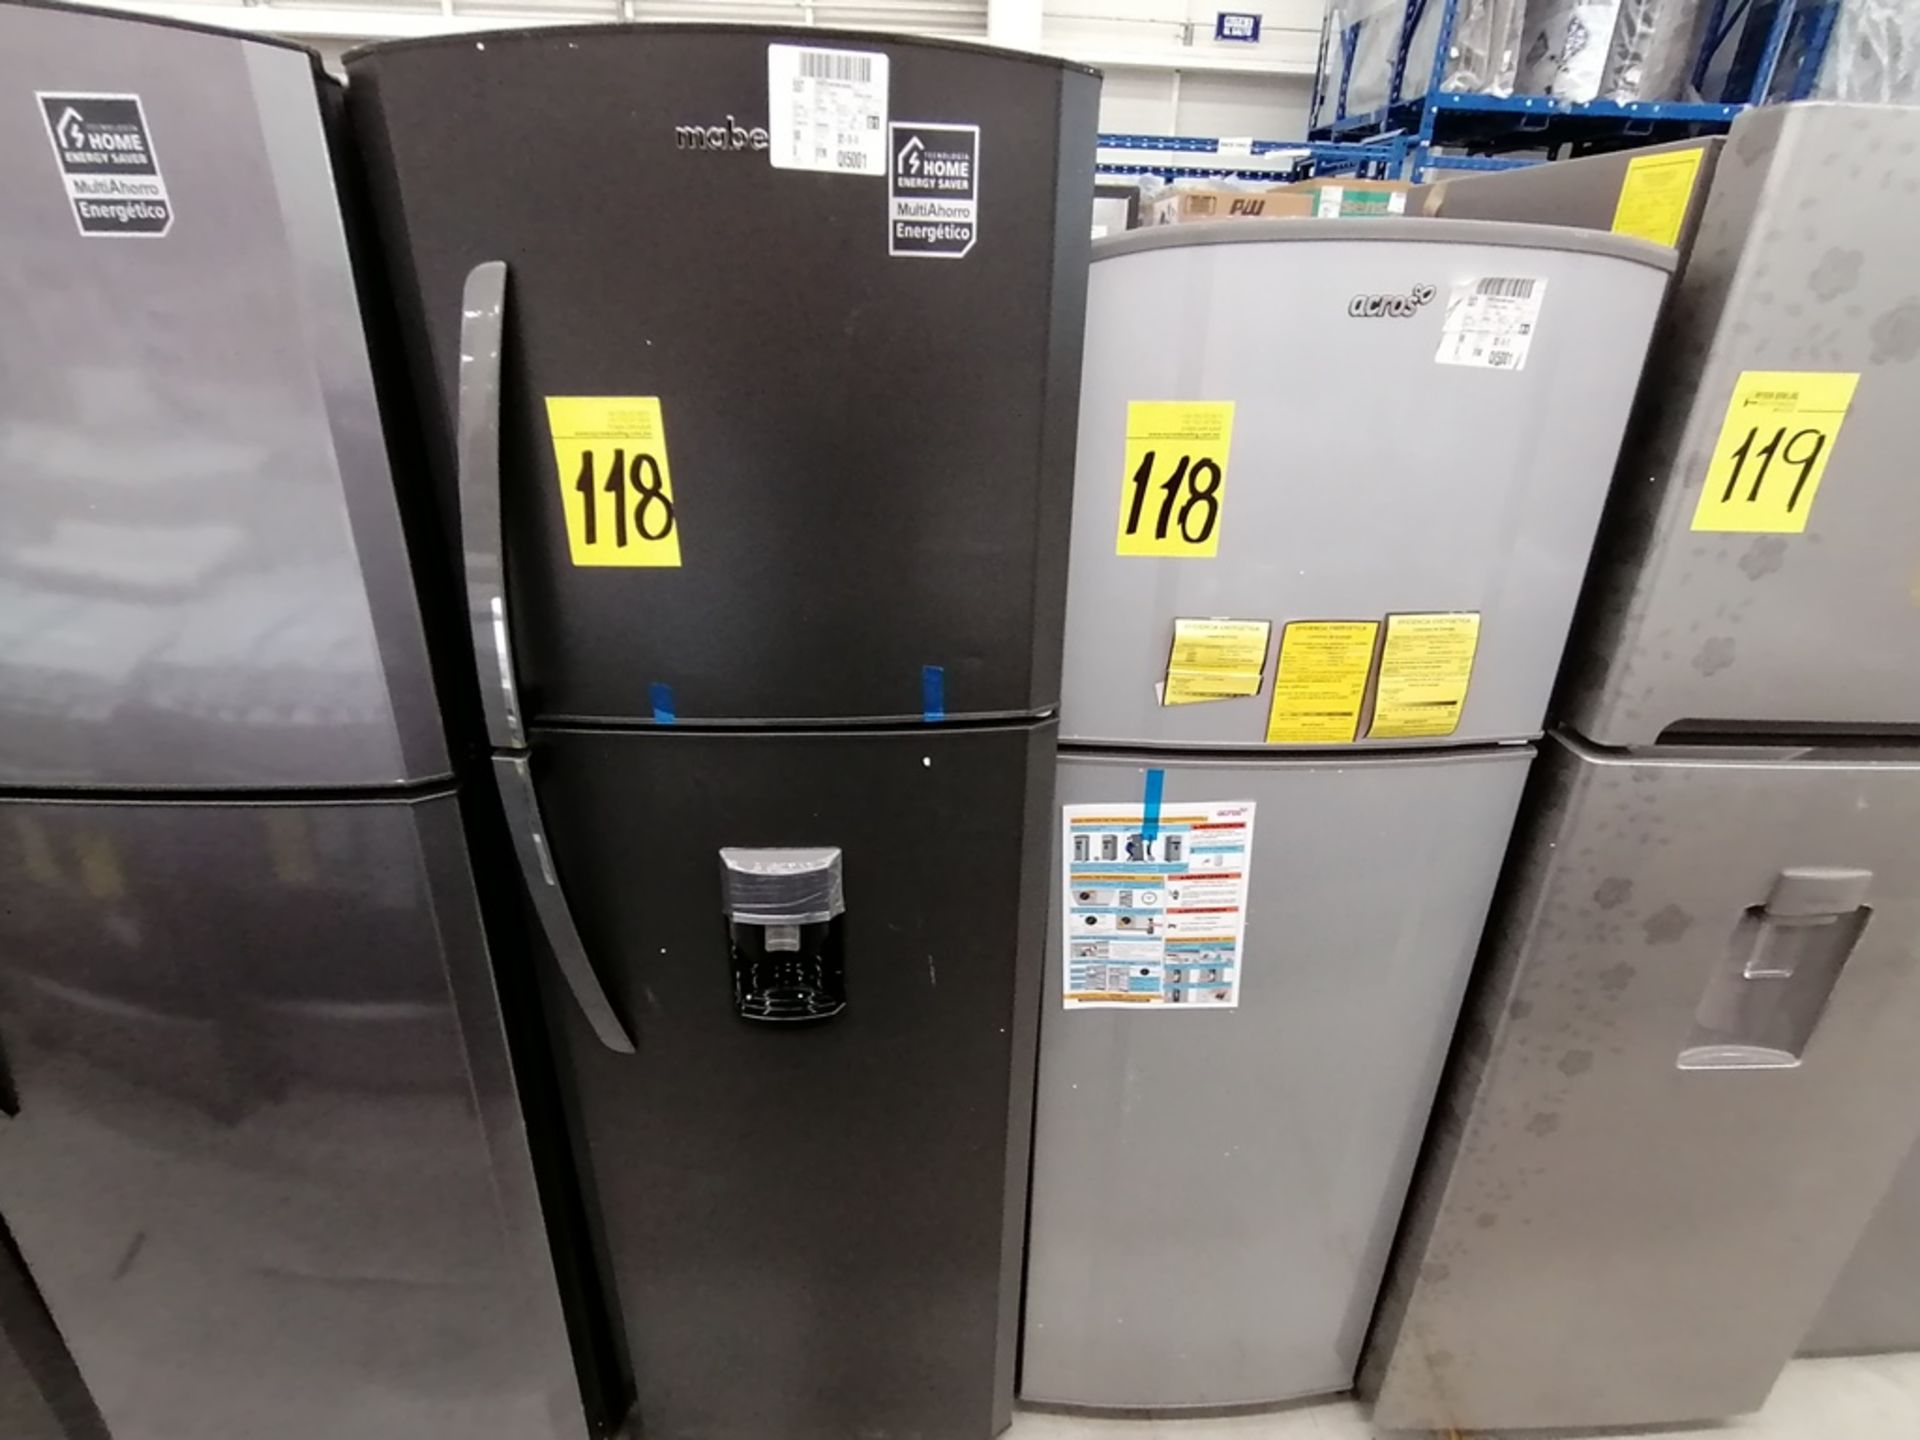 Lote de 2 refrigeradores incluye: 1 Refrigerador con dispensador de agua, Marca Mabe, Modelo RMA300 - Image 3 of 15